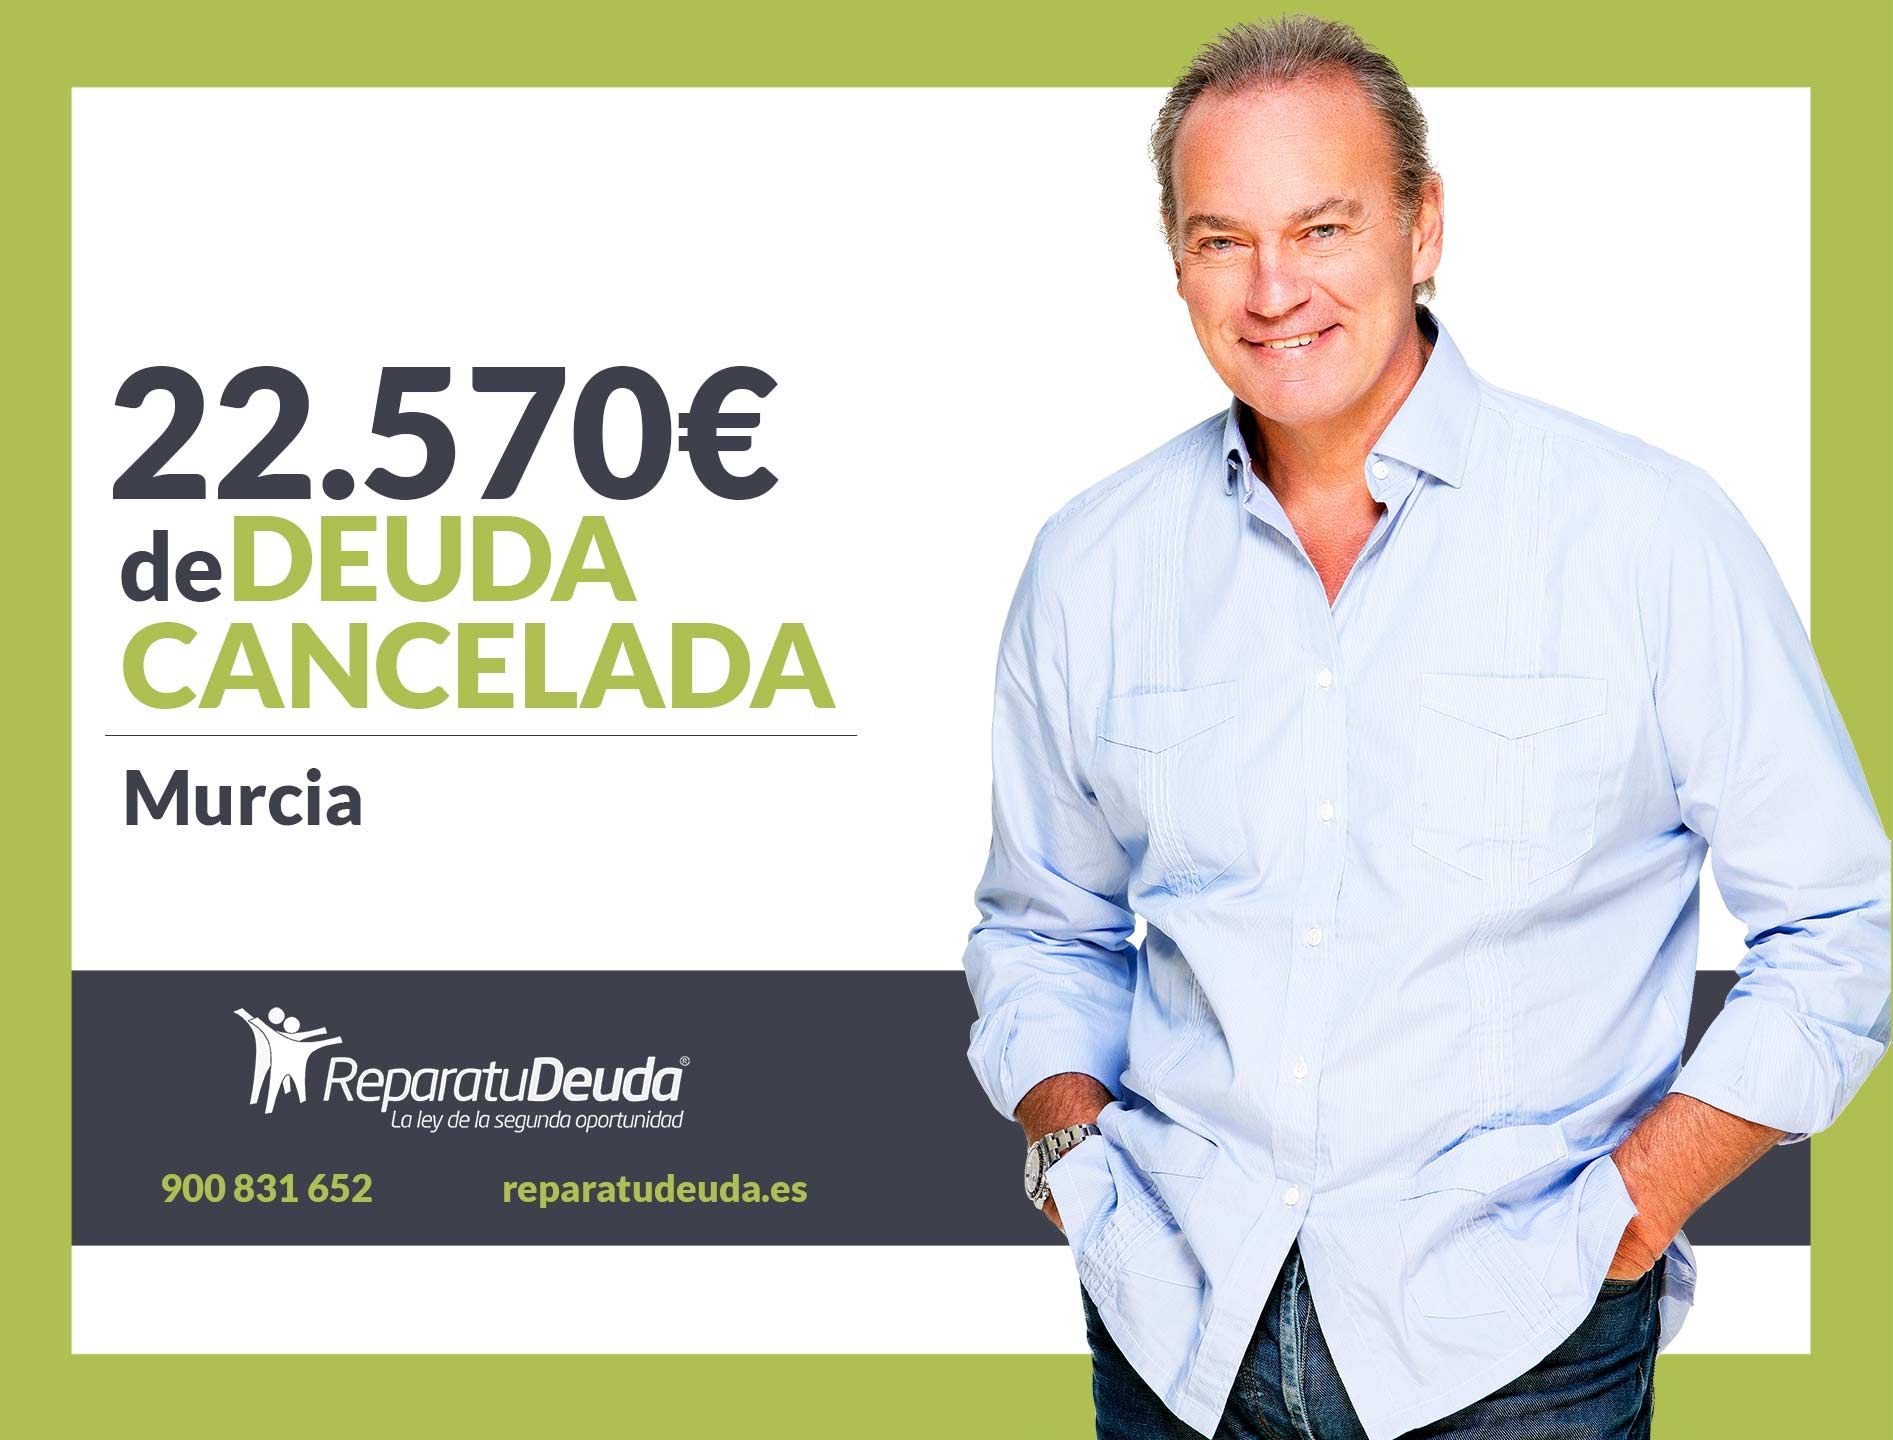 Repara tu Deuda Abogados cancela 22.570? en Murcia con la Ley de Segunda Oportunidad